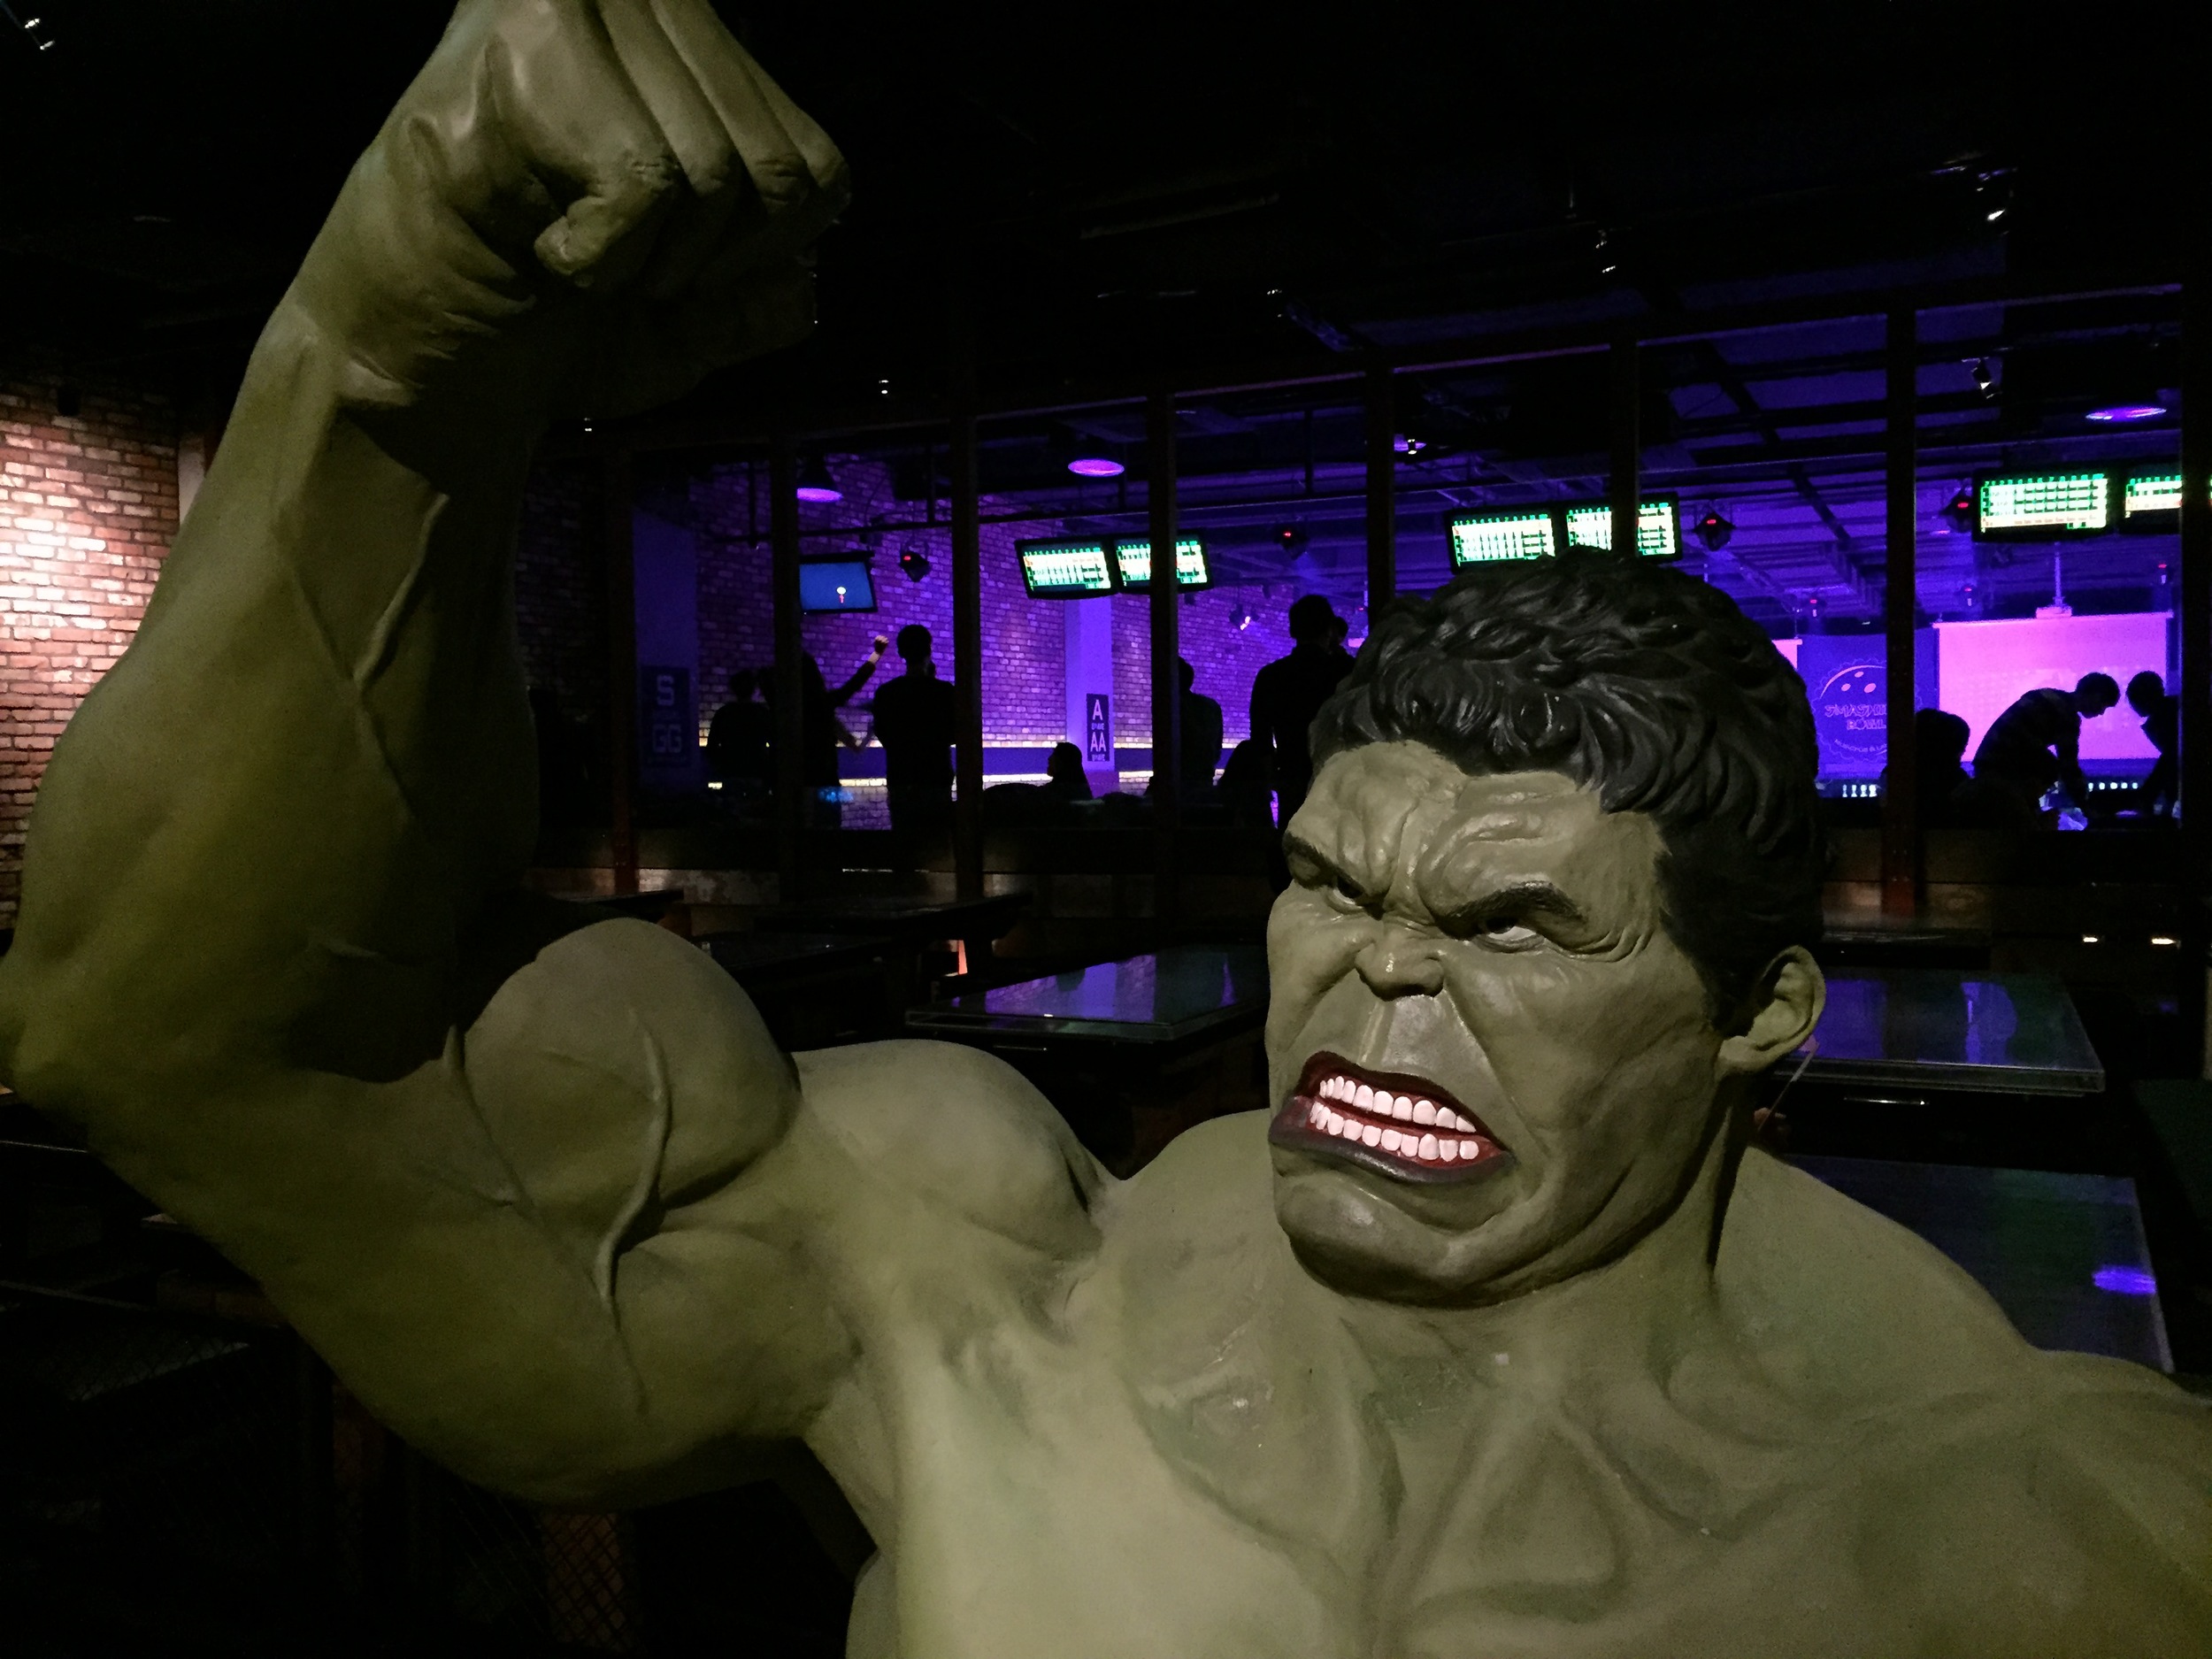 Hulk at the Entrance